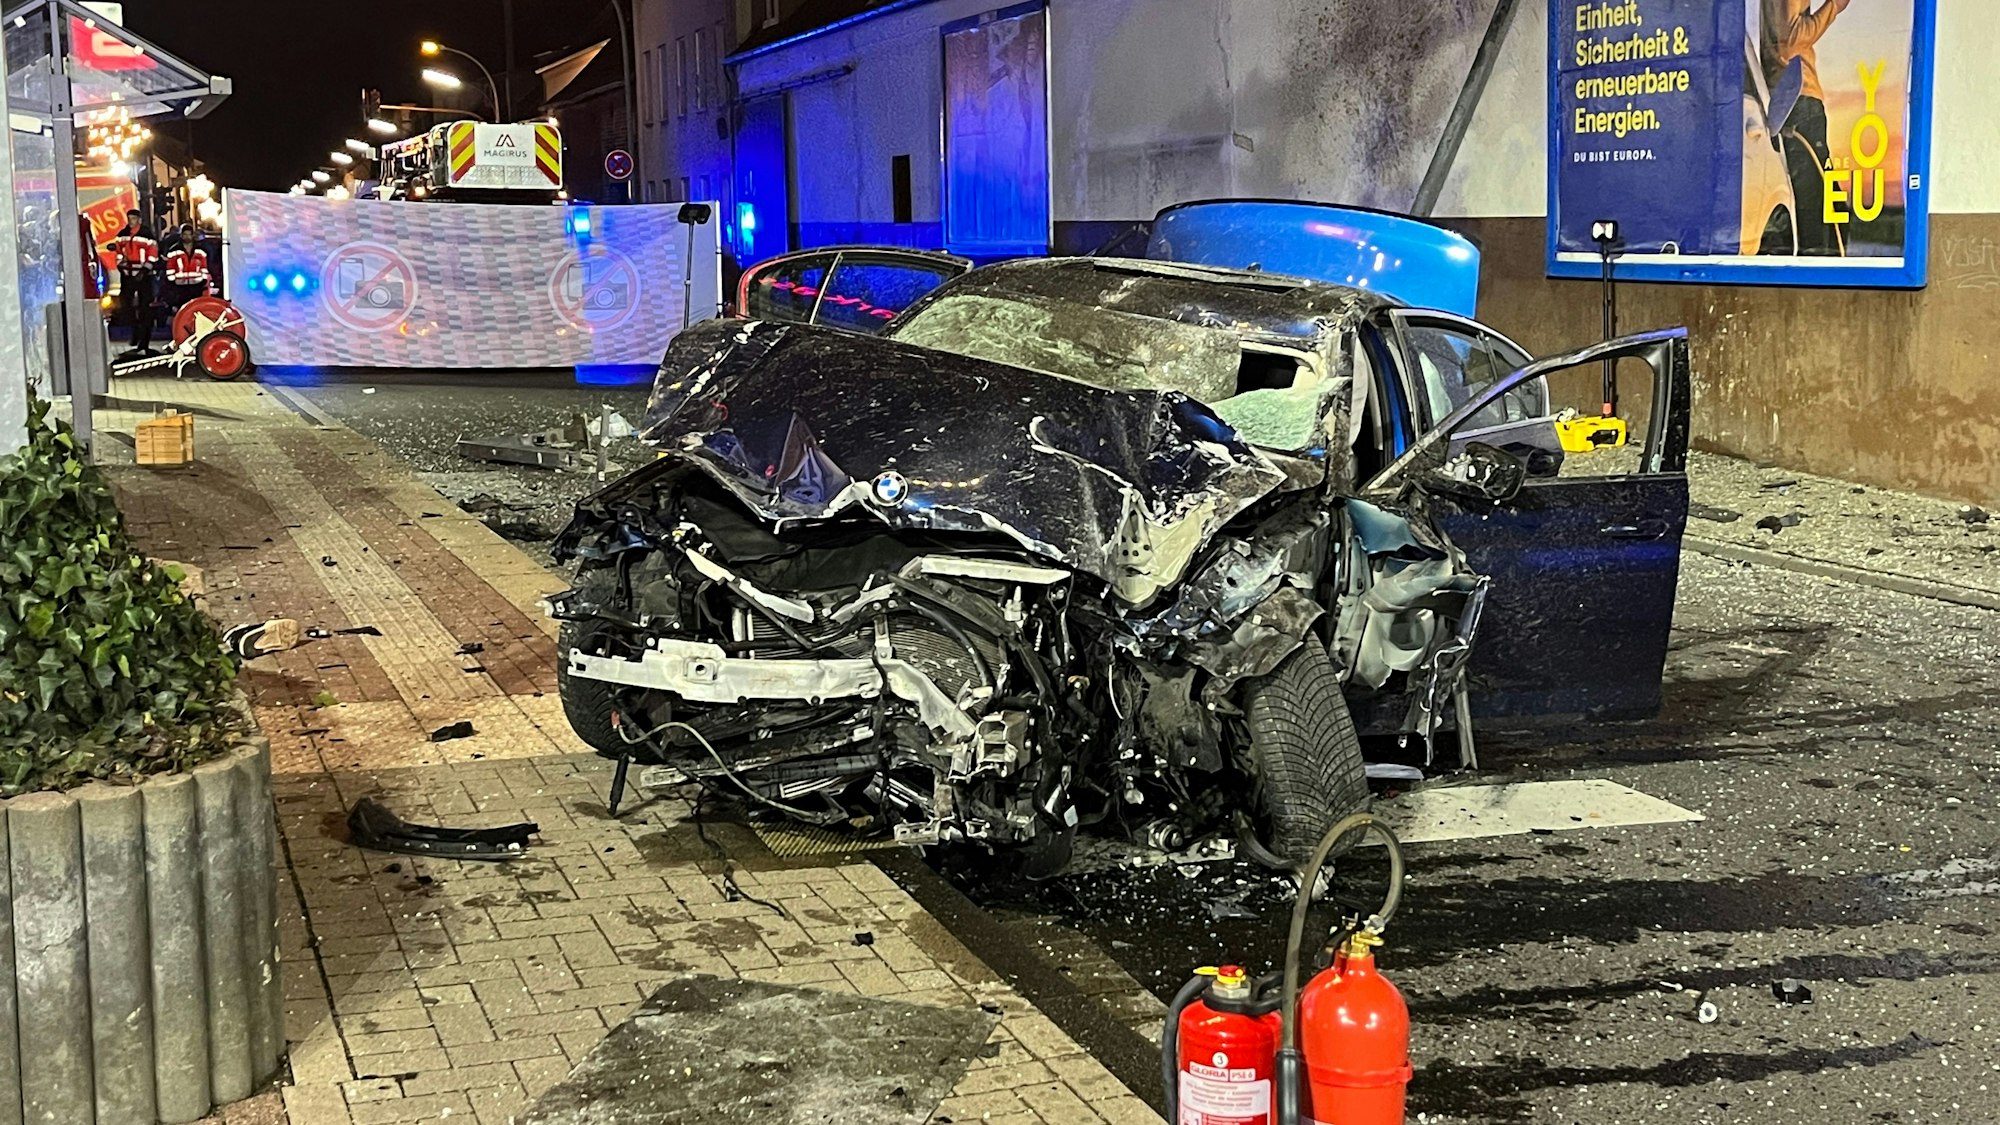 Auf der Provinzialstraße in Niederkassel-Mondorf steht der völlig zerstörte BMW, der ungebremst in eine Bushaltestelle gerast war und einen Jugendlichen tödlich verletzt hatte.